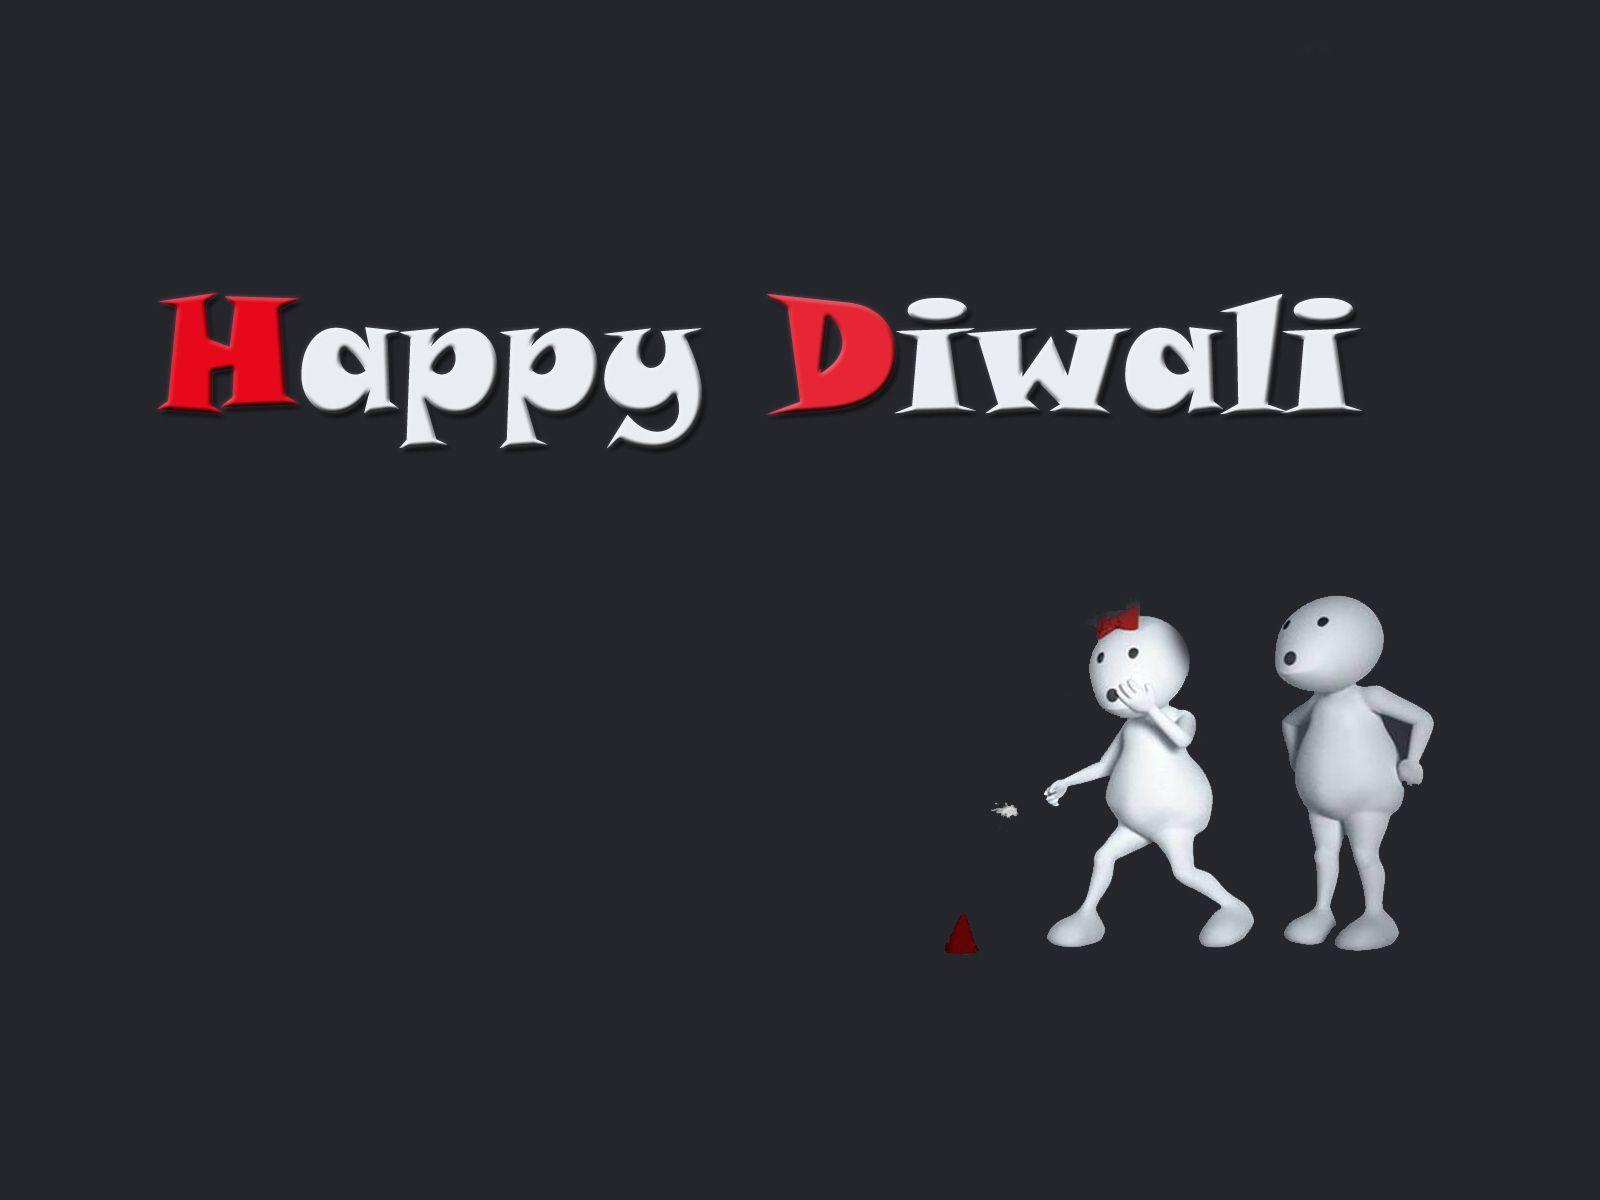 Zoozoo wishes Happy Diwali to his Girlfriend HD image. Rocks